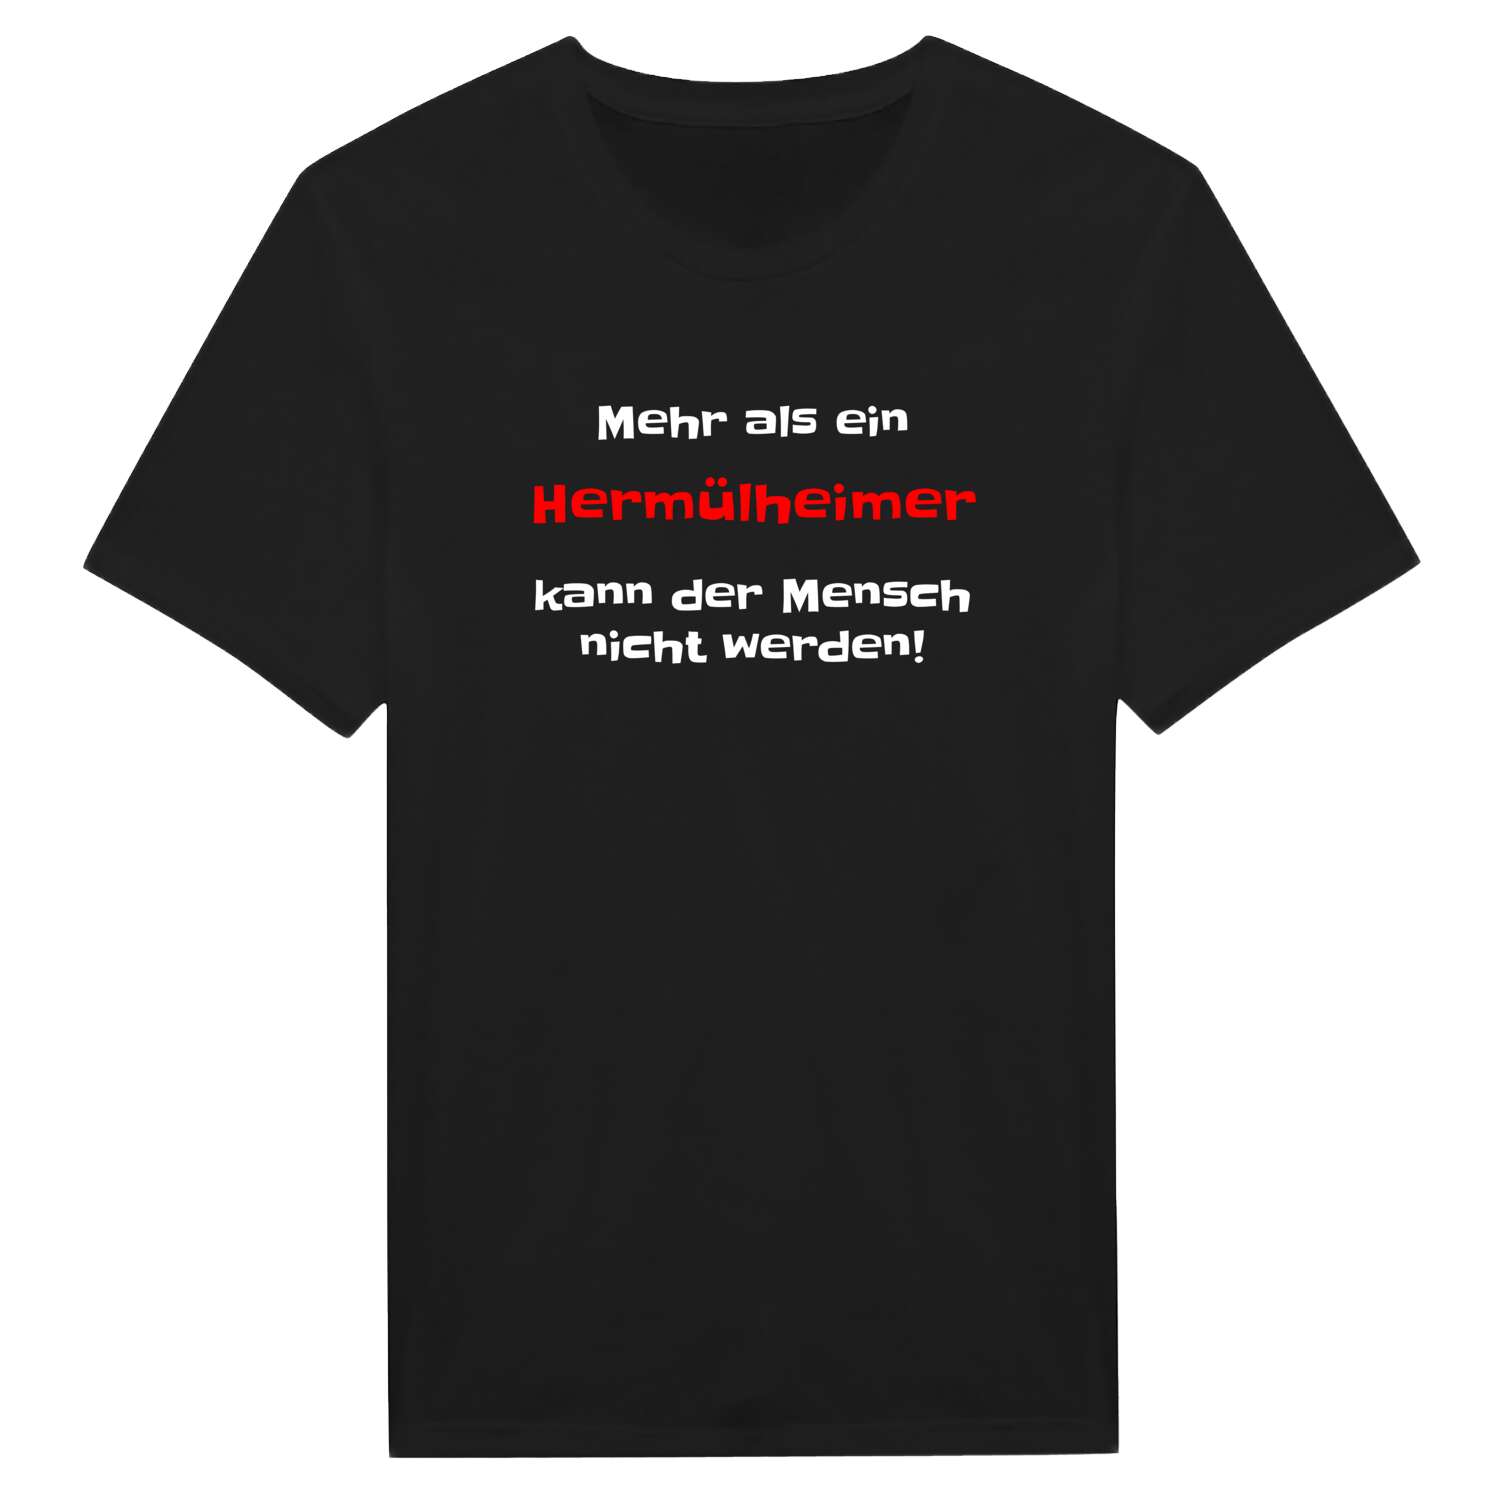 Hermülheim T-Shirt »Mehr als ein«